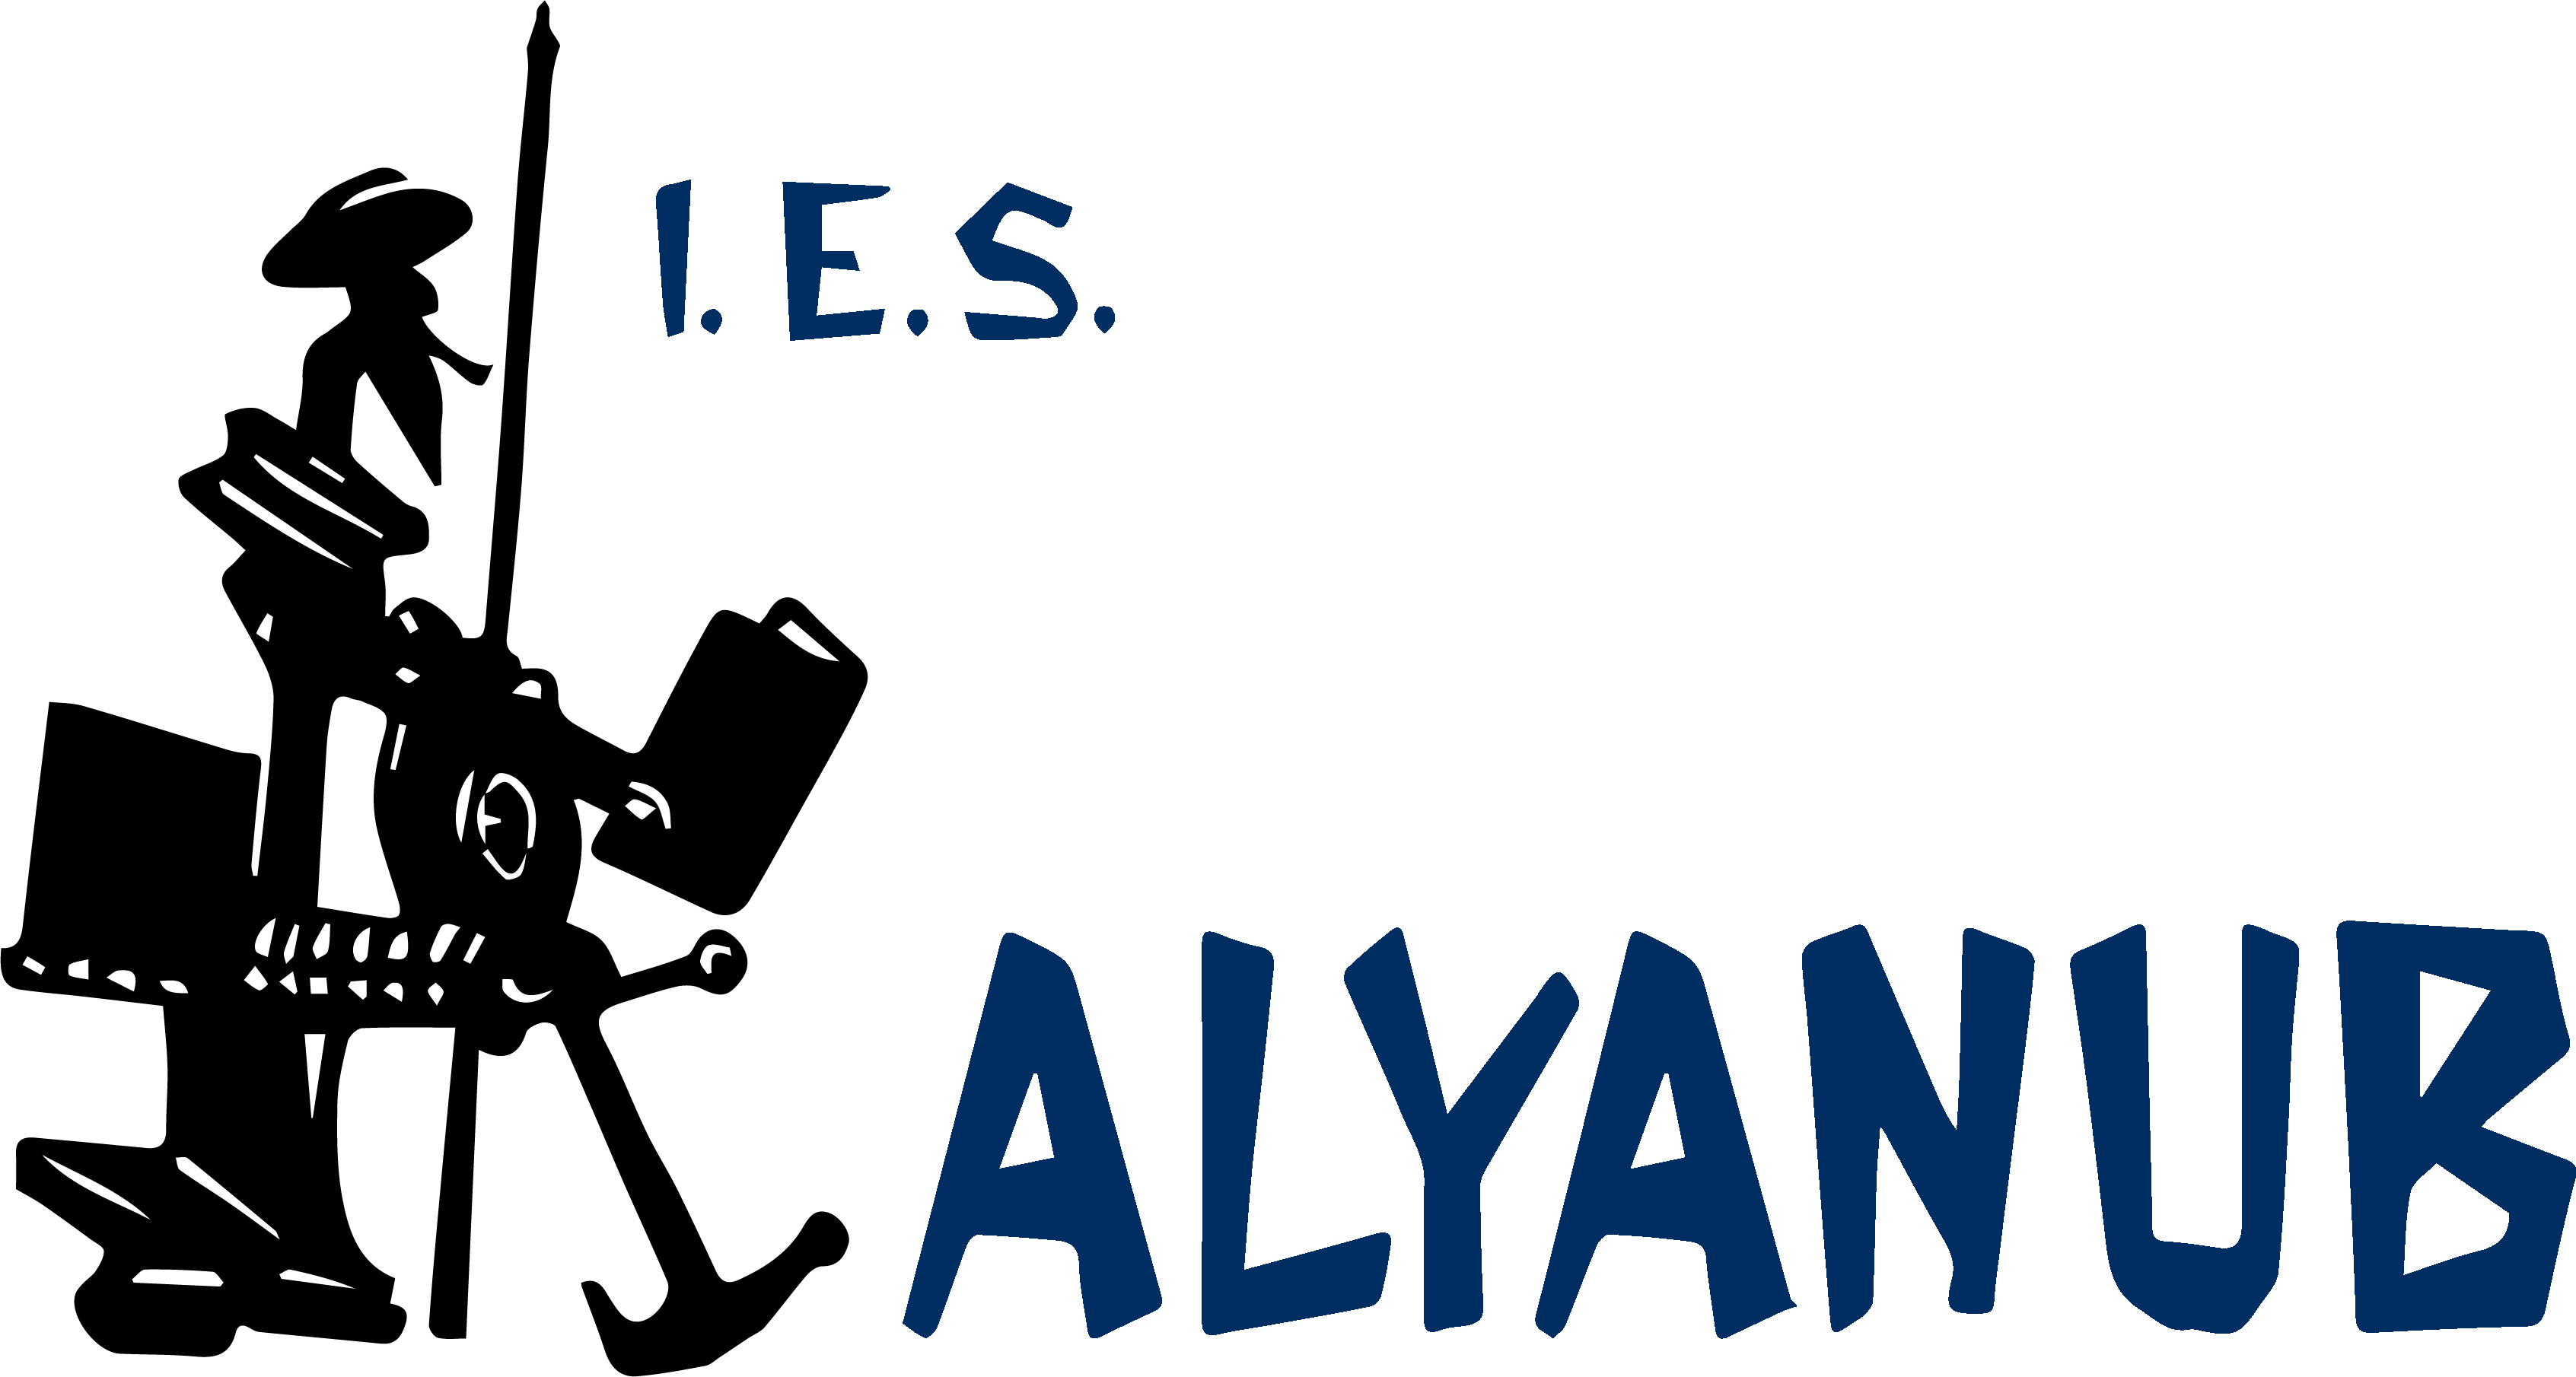 Alyanub